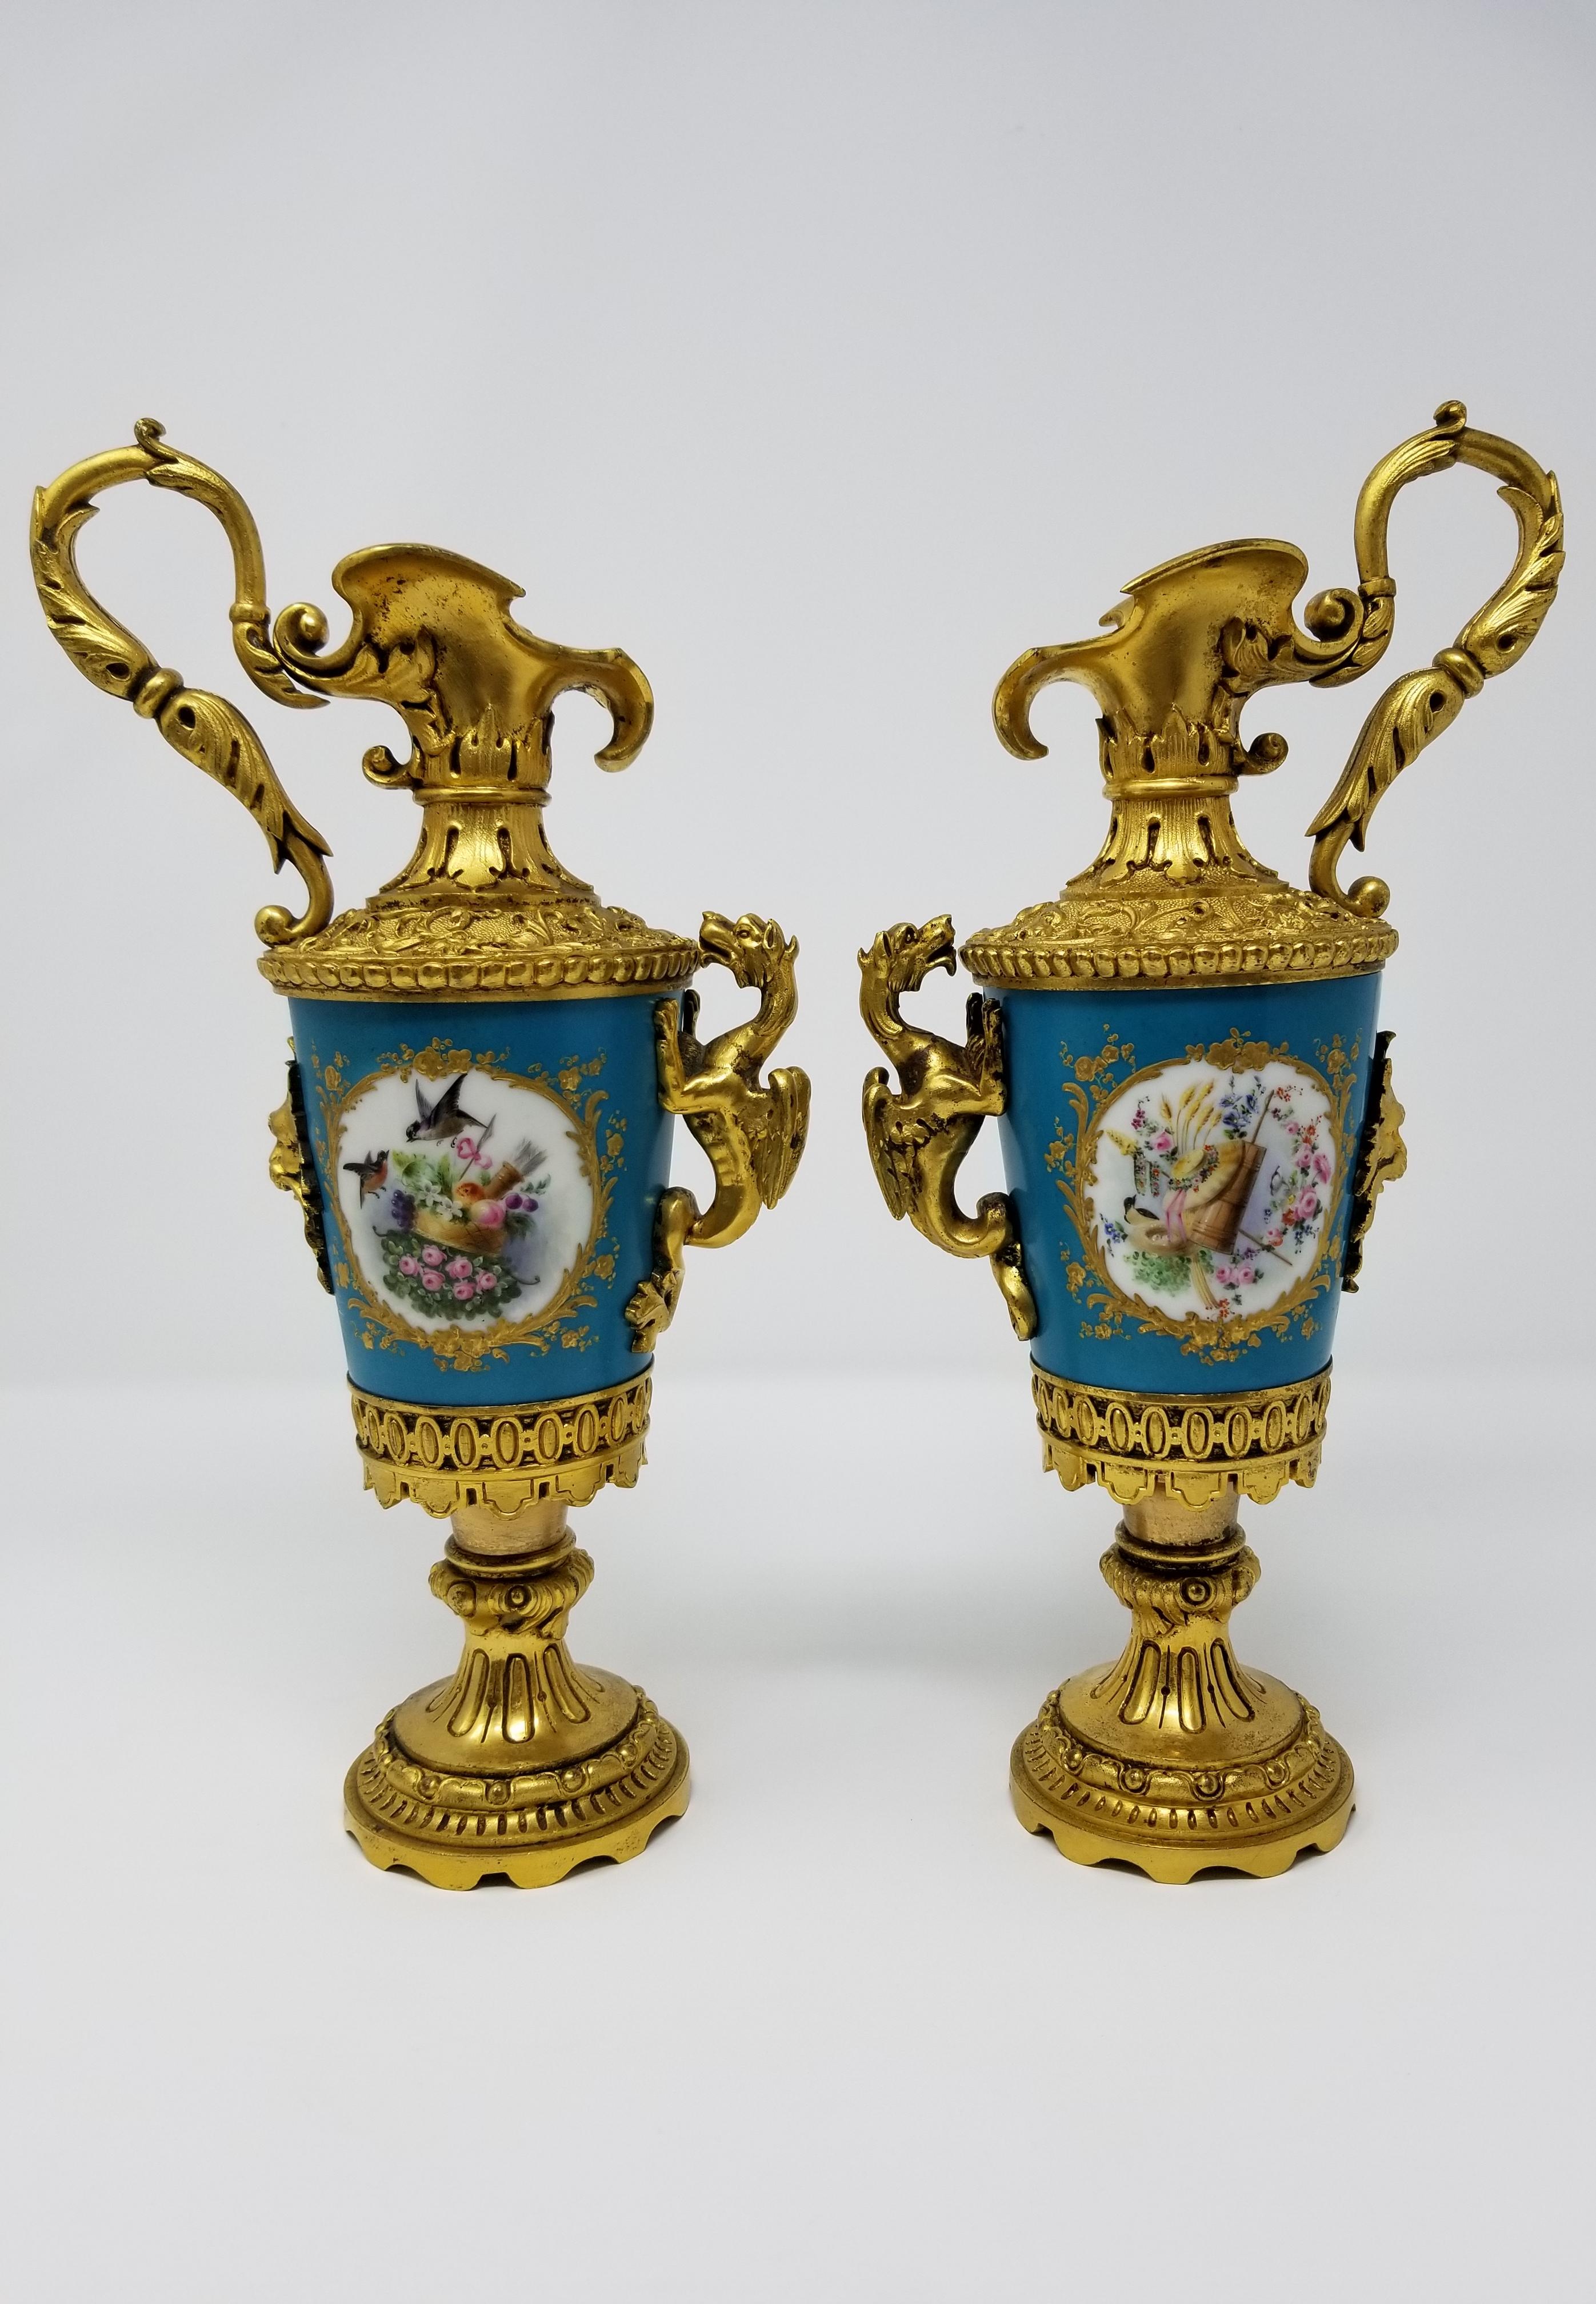 Une belle paire d'aiguières de style Louis XVI du 19ème siècle en porcelaine française de Sèvres et montées en bronze doré avec des poignées en forme de dragon, des oiseaux et des fleurs. La porcelaine est montée sur des montures en bronze Doré